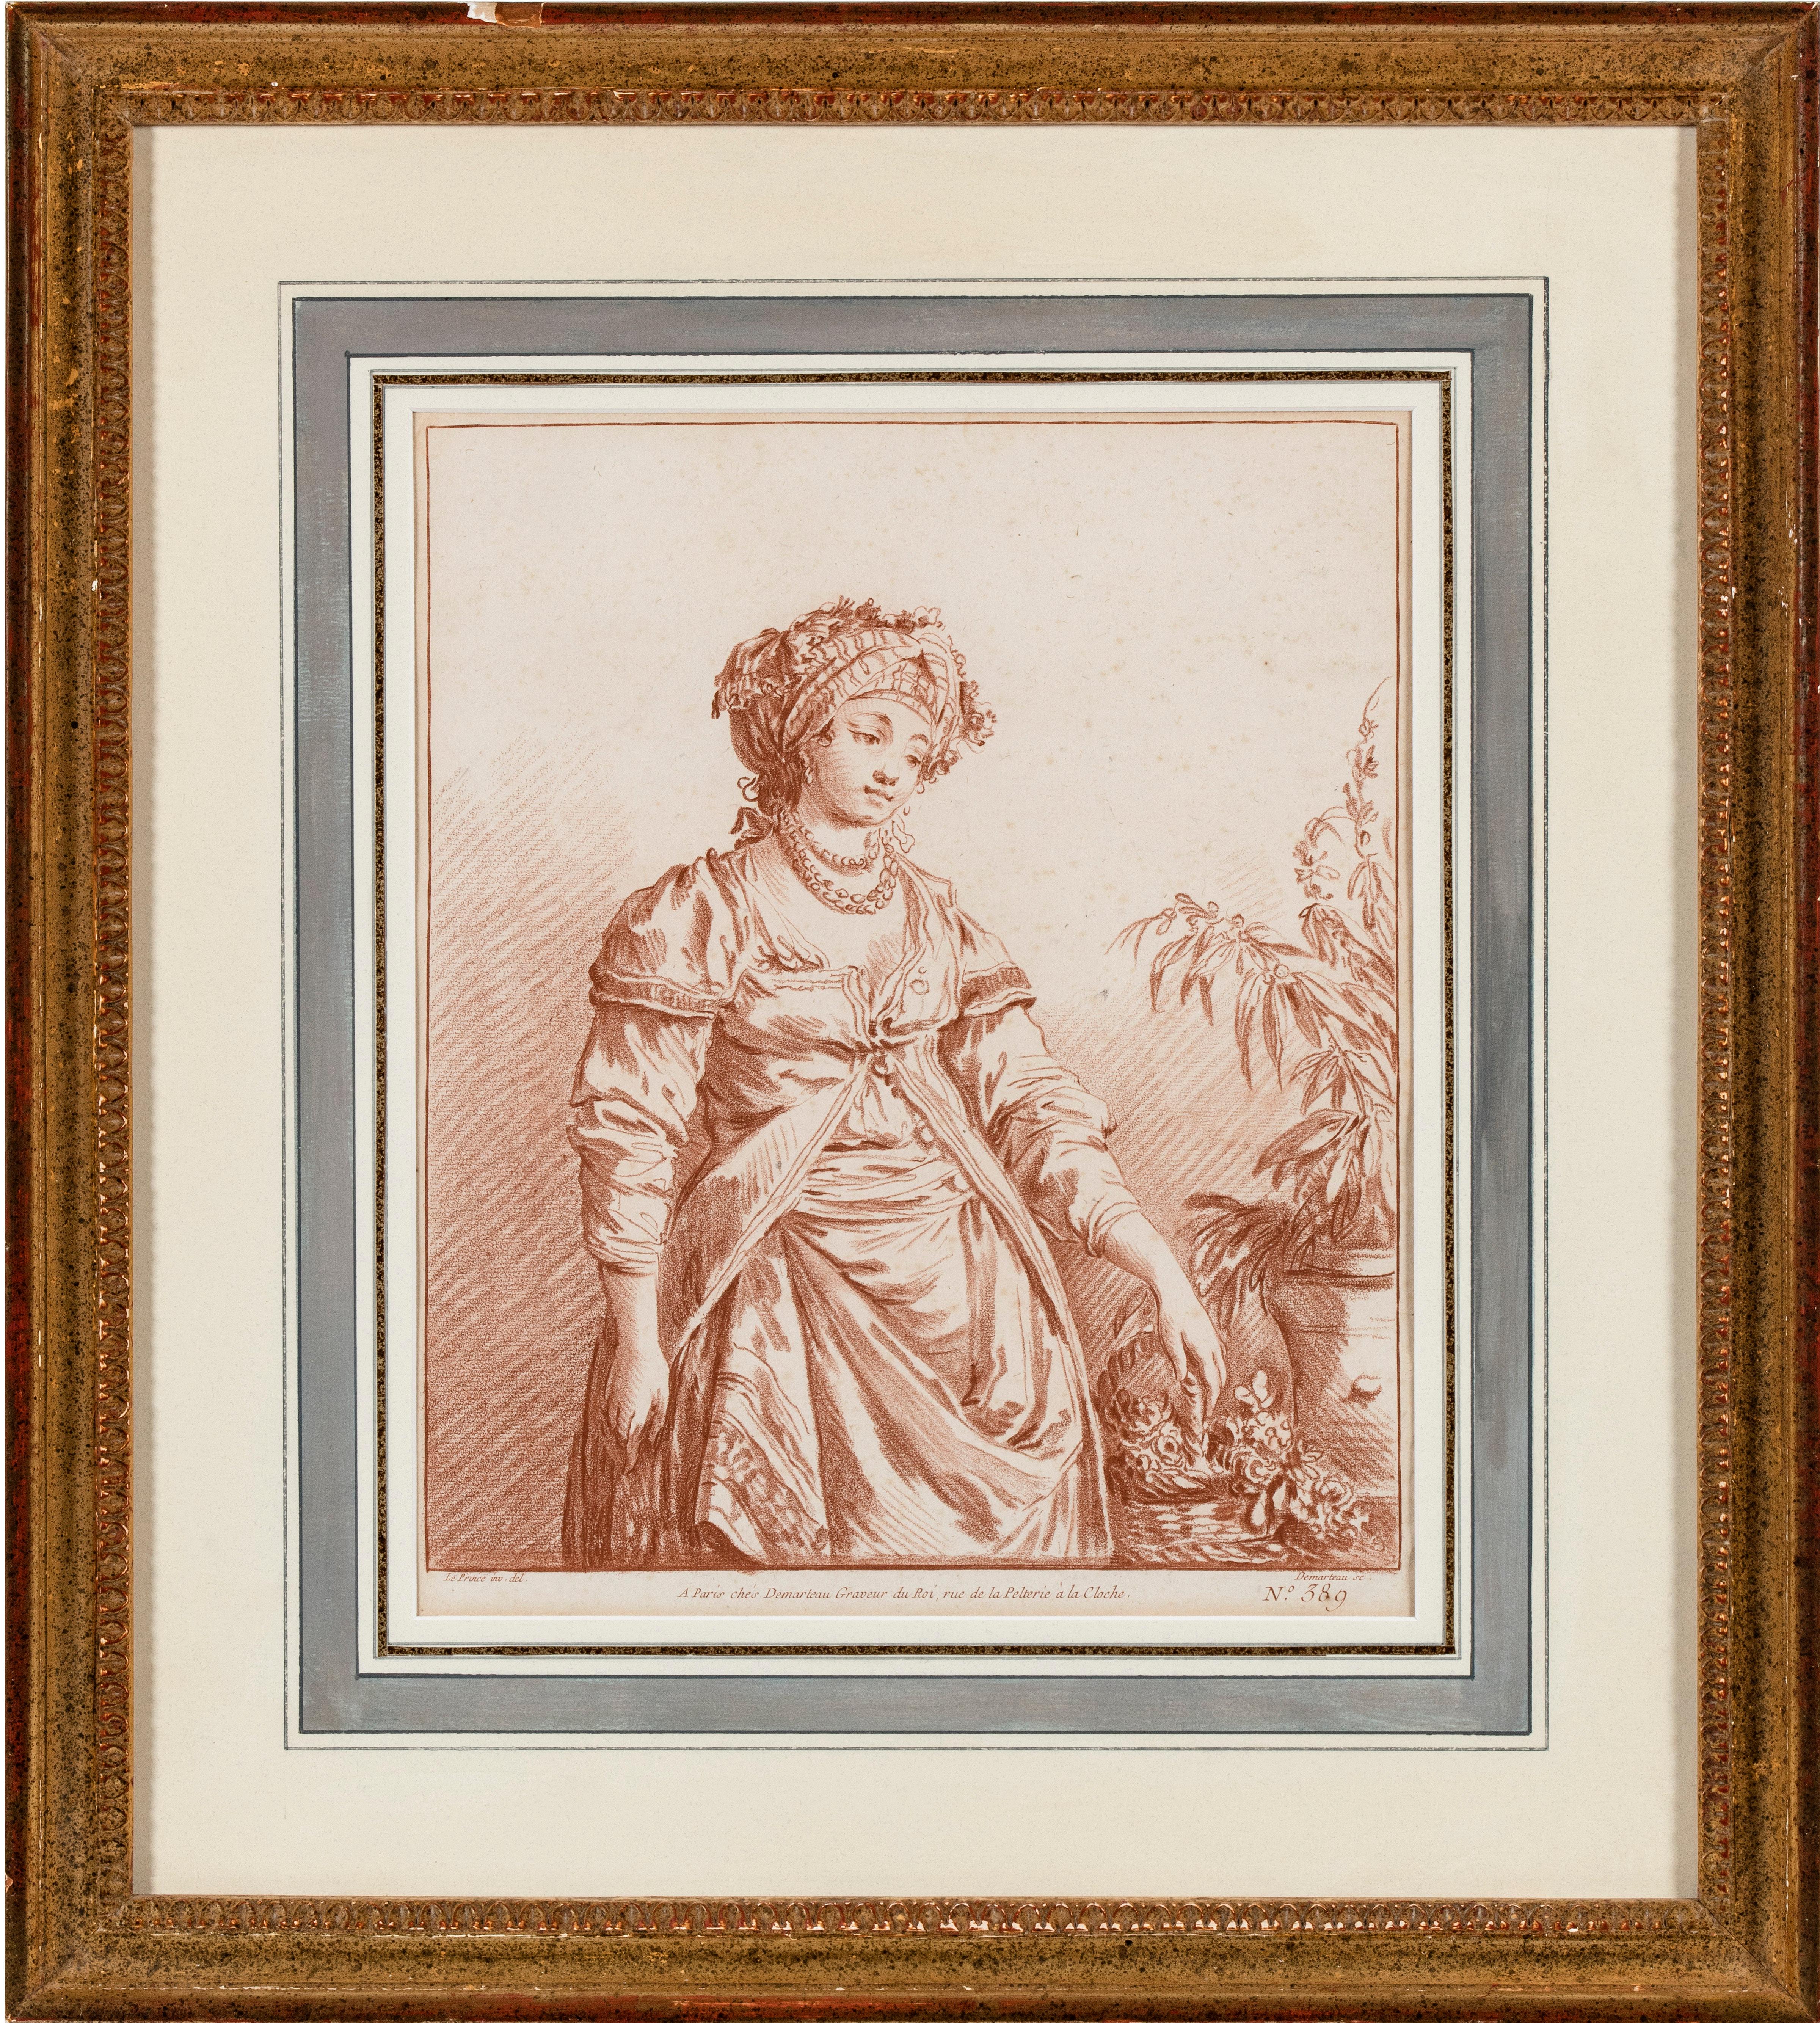 La paire comprend la présente œuvre et une gravure d'après celle-ci de la main de Giles DeMarteau (Liège 1722 - 1776 Paris) intitulée Femme en costume de fantaisie, d'après Jean Baptiste Le Prince, et mesurant, 10 ⅜ x 8 ⅝ pouces (26,5 x 22 cm).

La